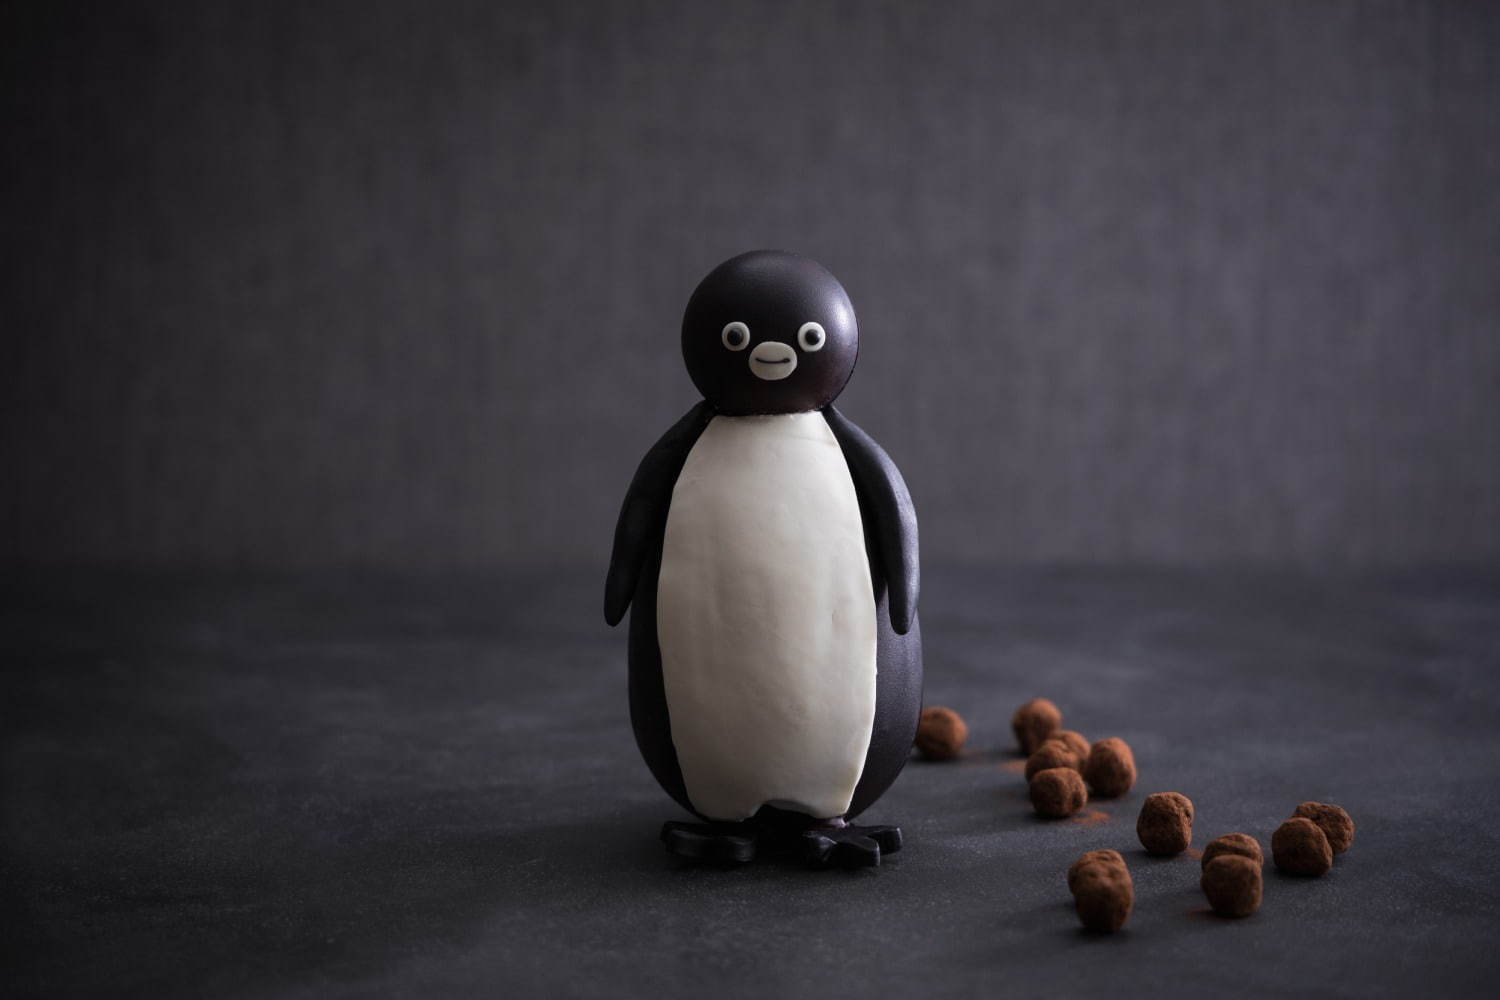 Suicaのペンギン チョコレート(高さ16.5cm)
価格：4,000円(税込)、トートバッグ付き 5,000円(税込)